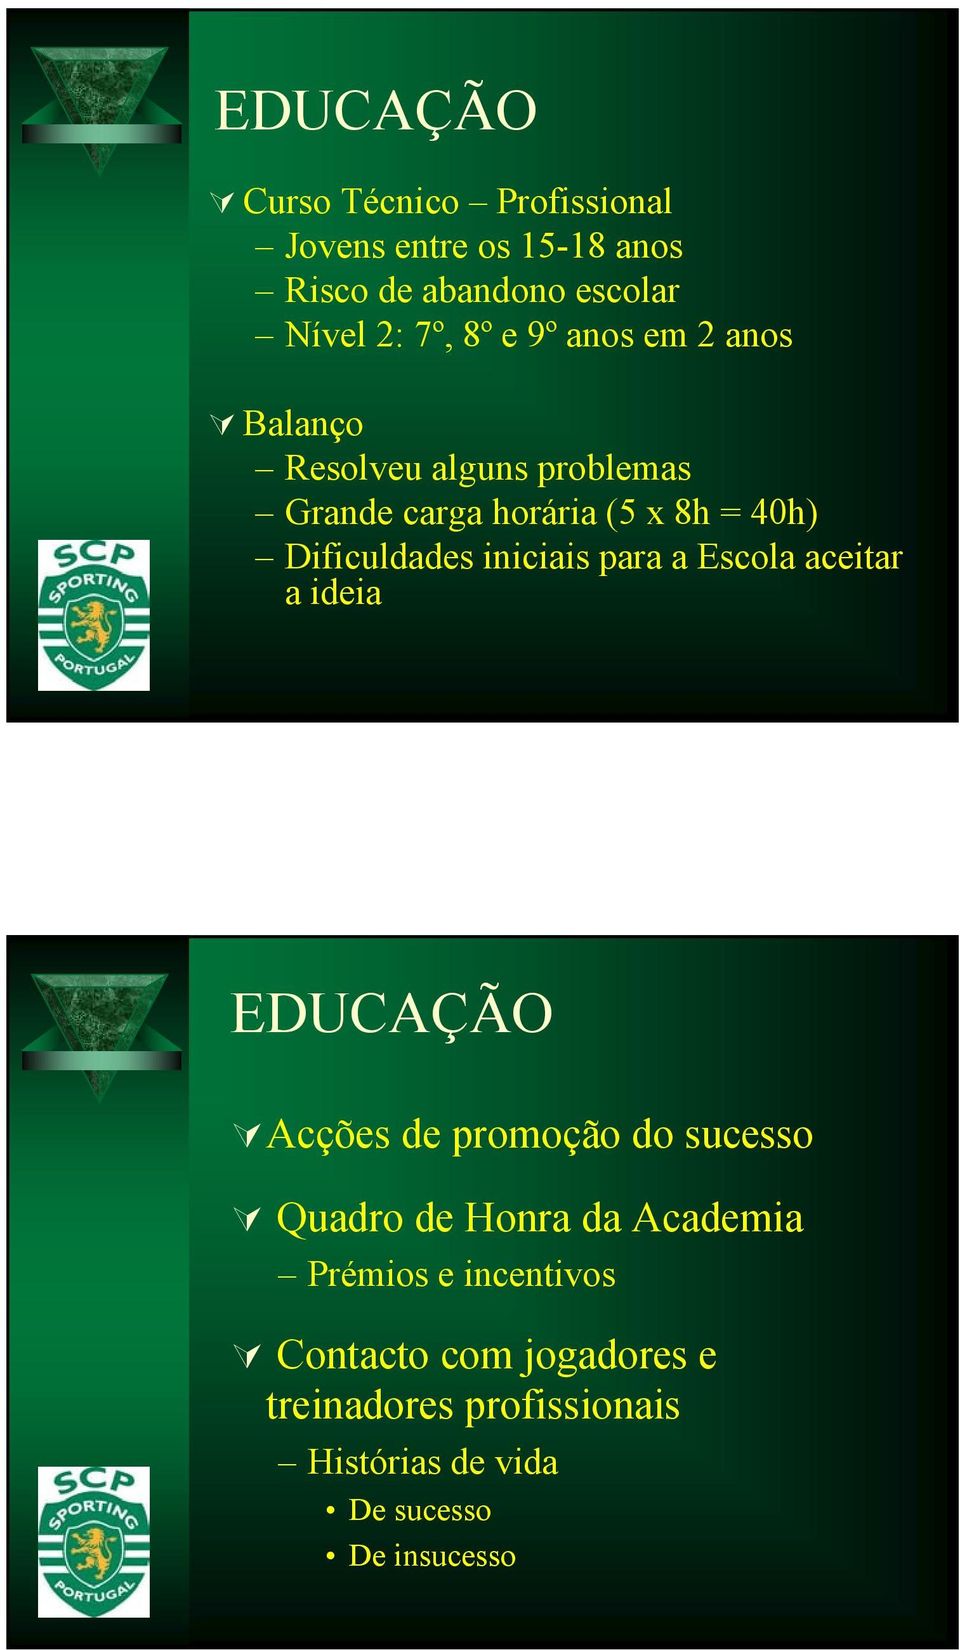 iniciais para a aceitar a ideia EDUCAÇÃO Acções de promoção do sucesso Quadro de Honra da Academia